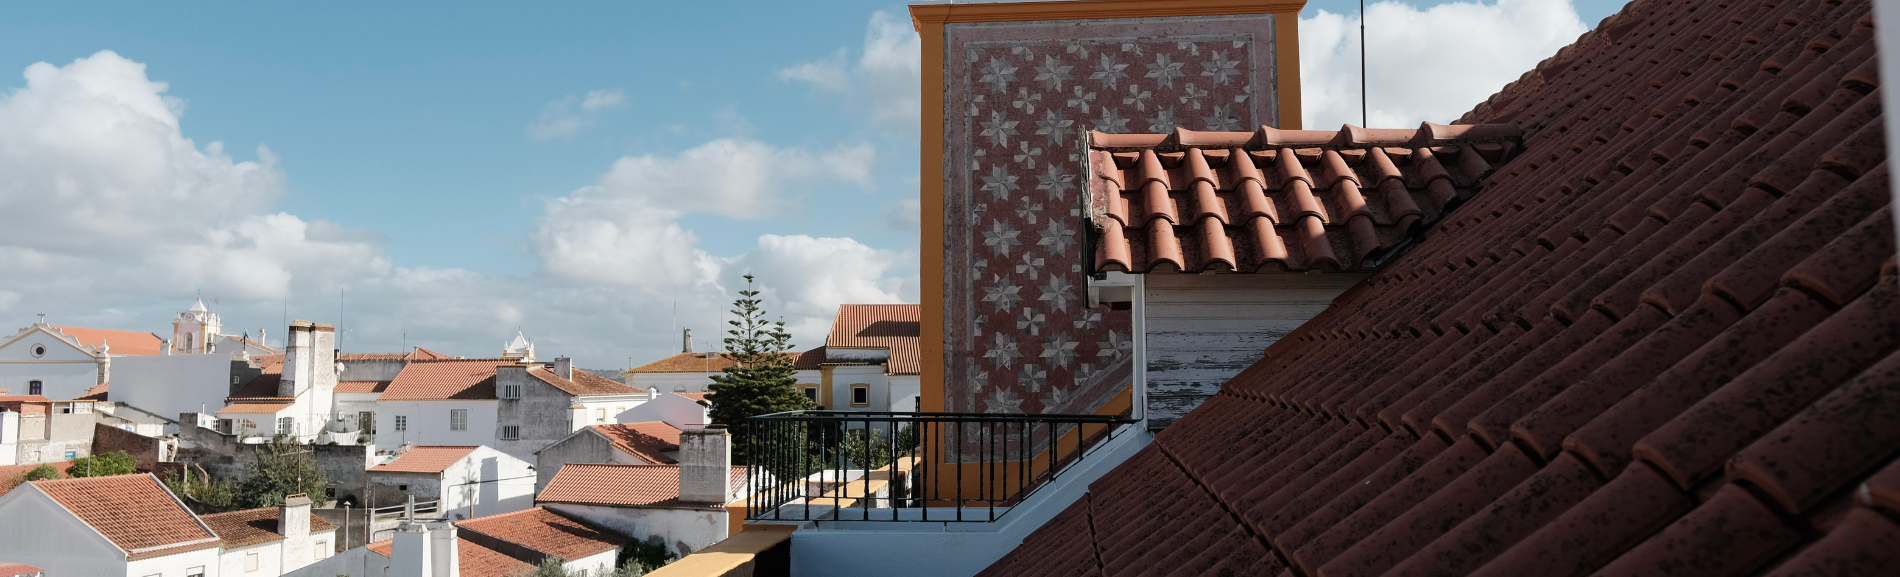 o telhado de uma casa tem um padrão geométrico